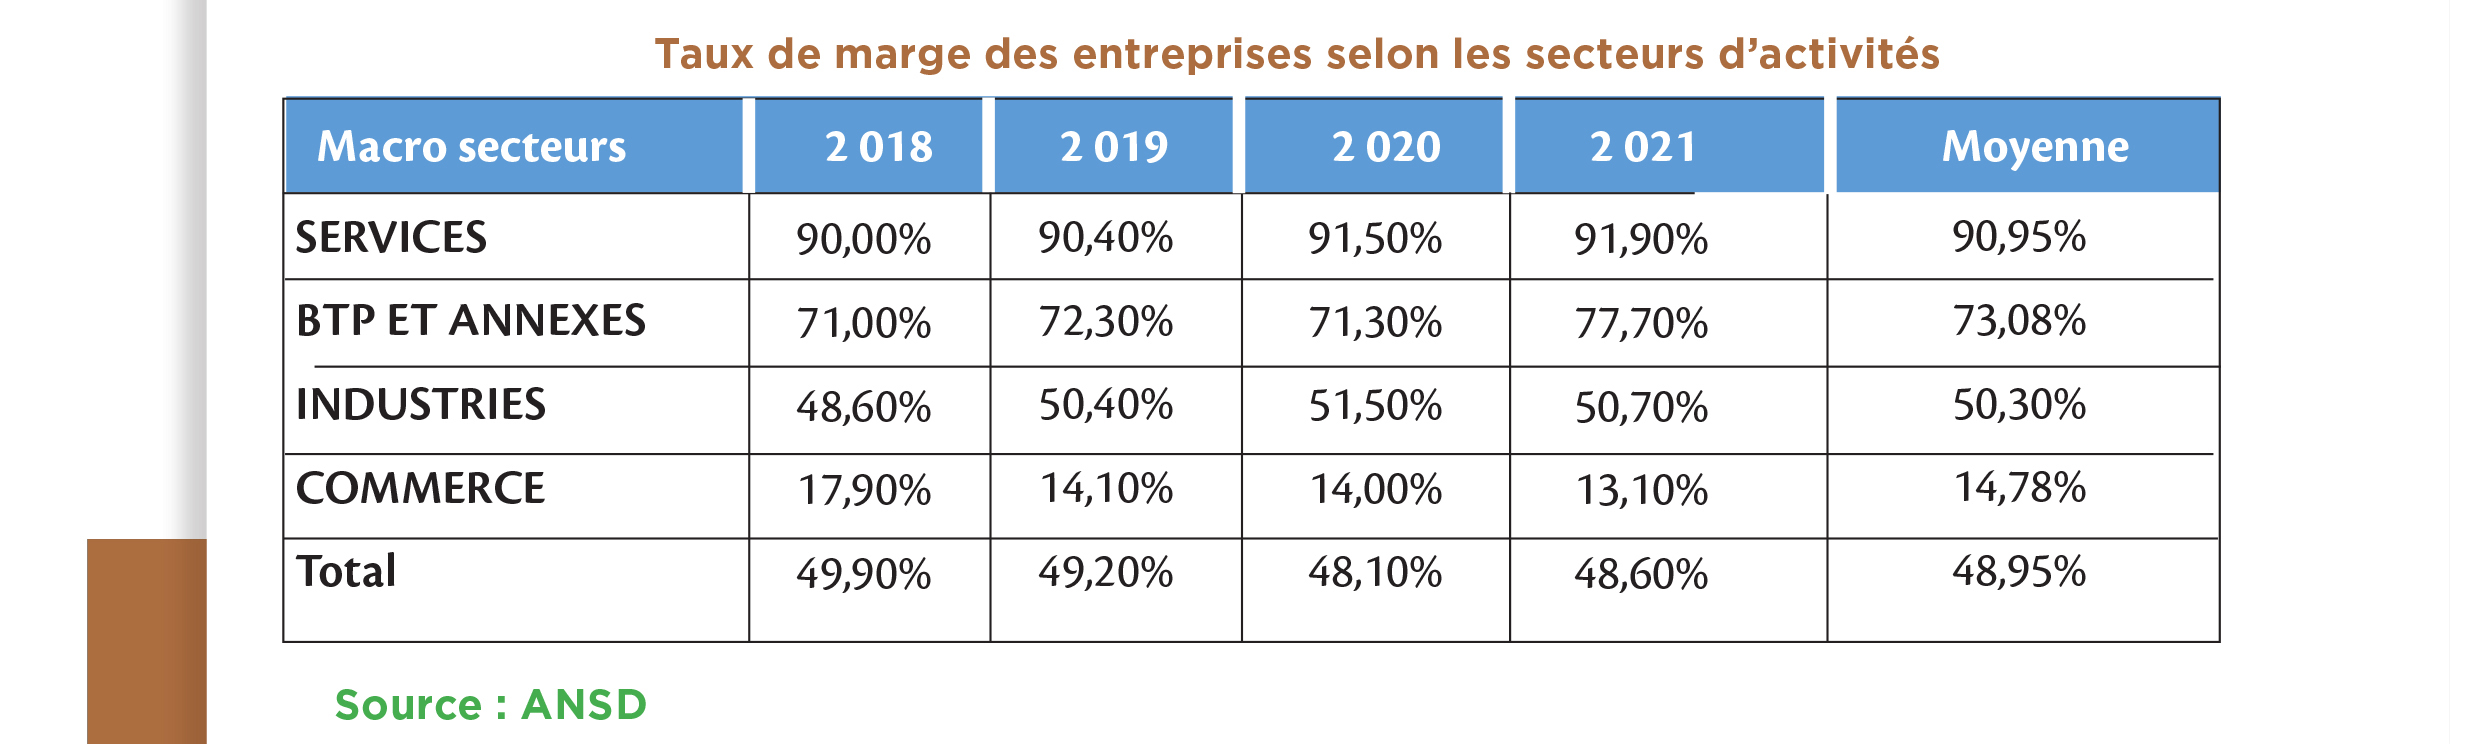 Le taux de marge des entreprises sénégalaises est relativement élevé dans les Services et les BTP